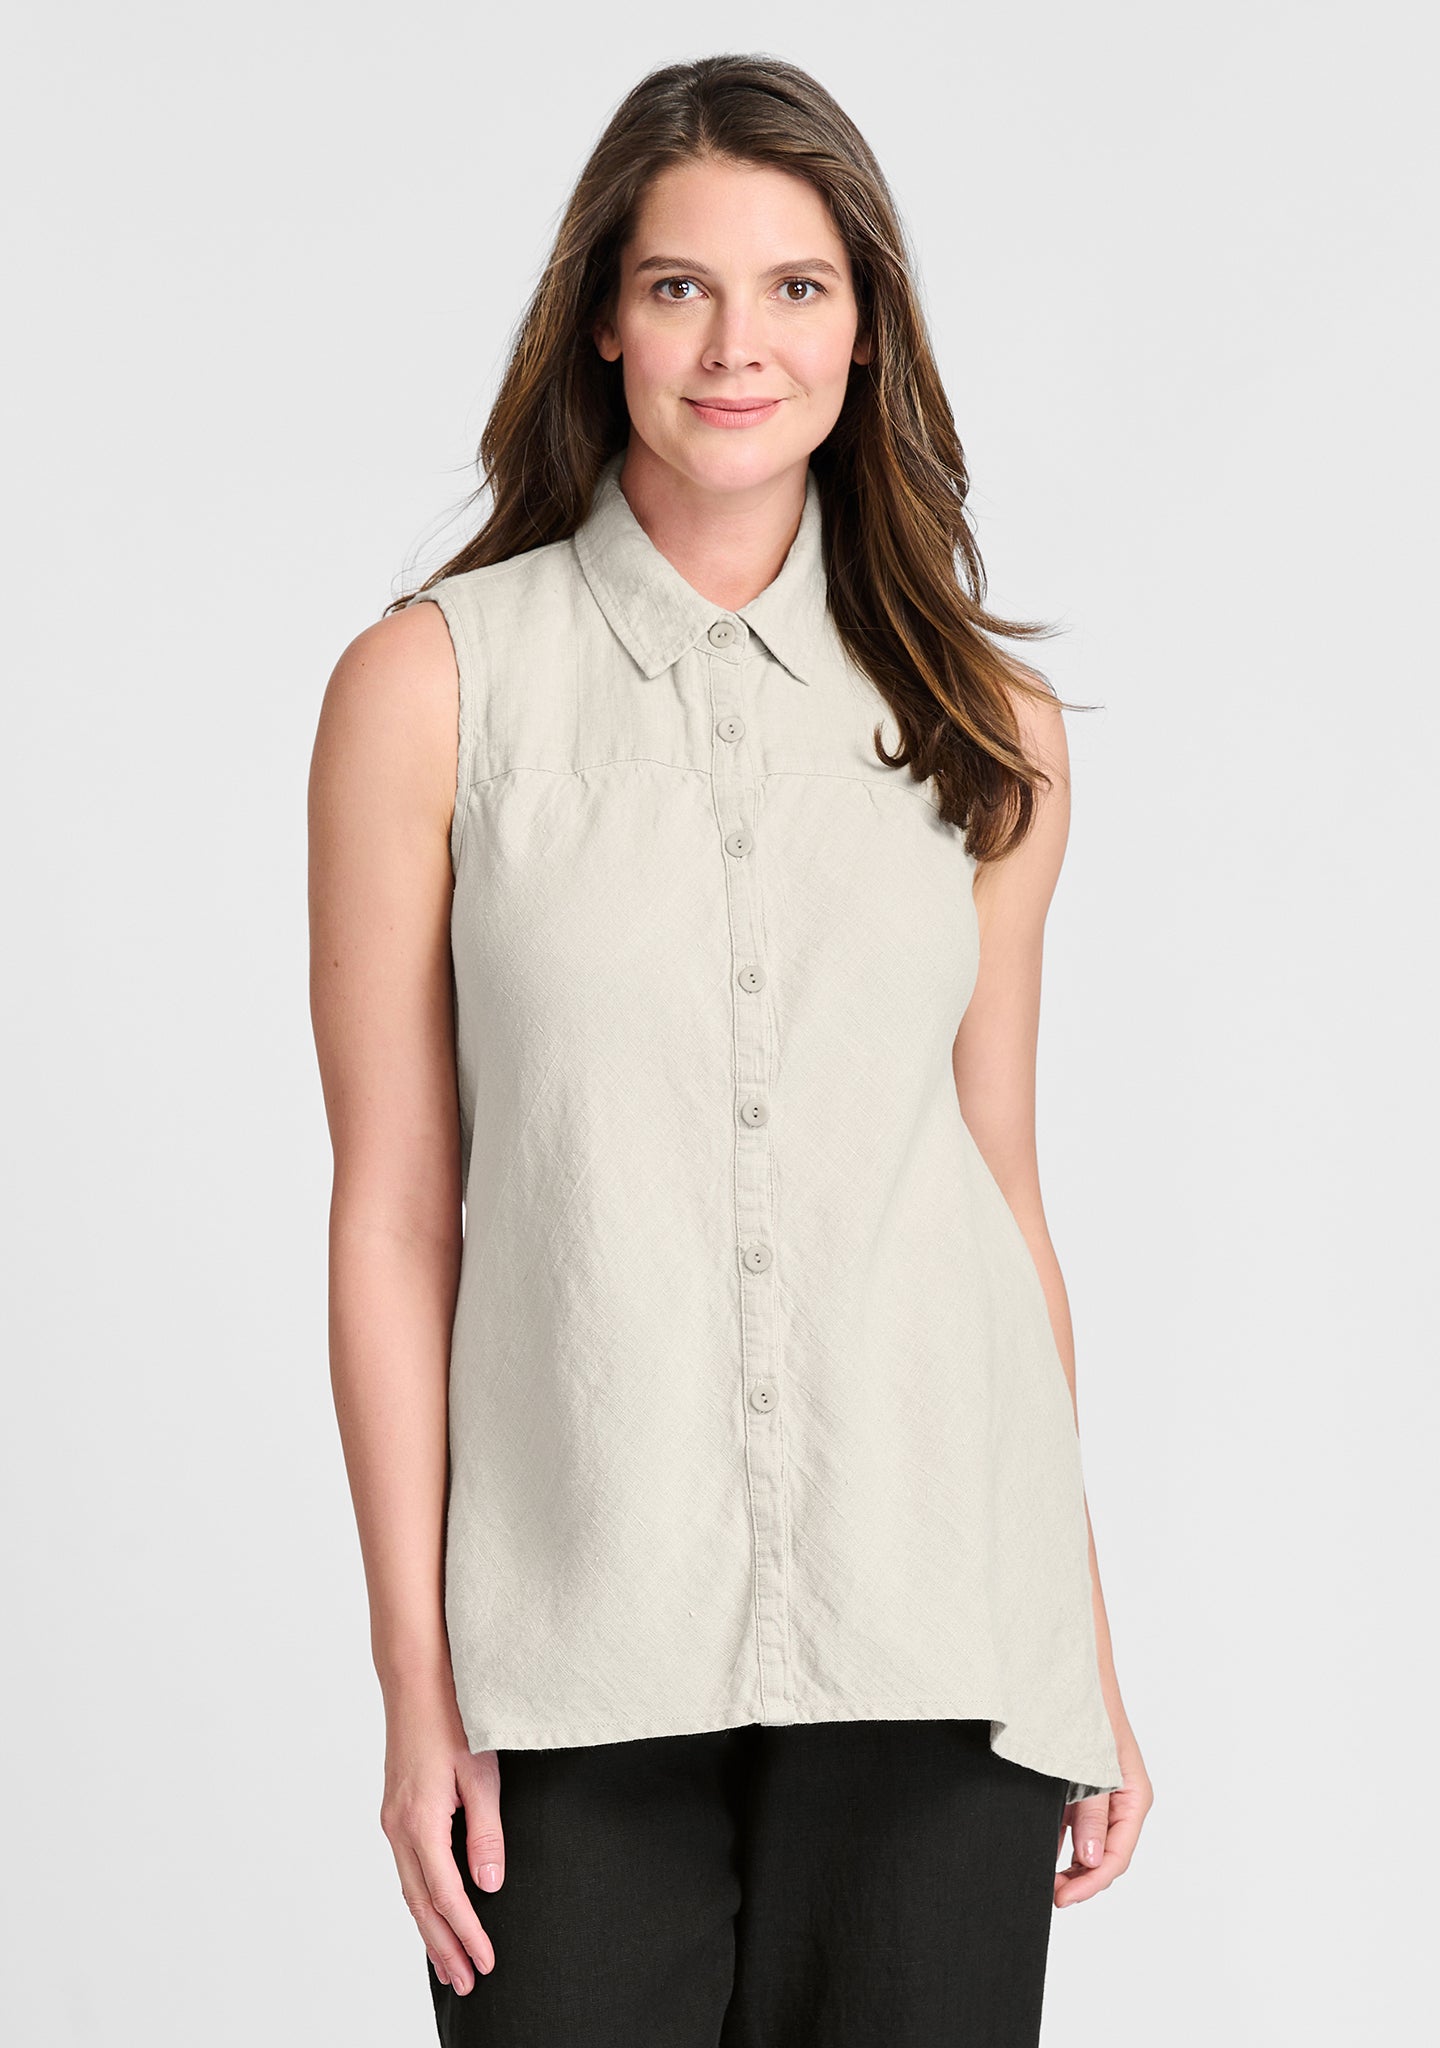 skyline blouse sleeveless linen blouse natural